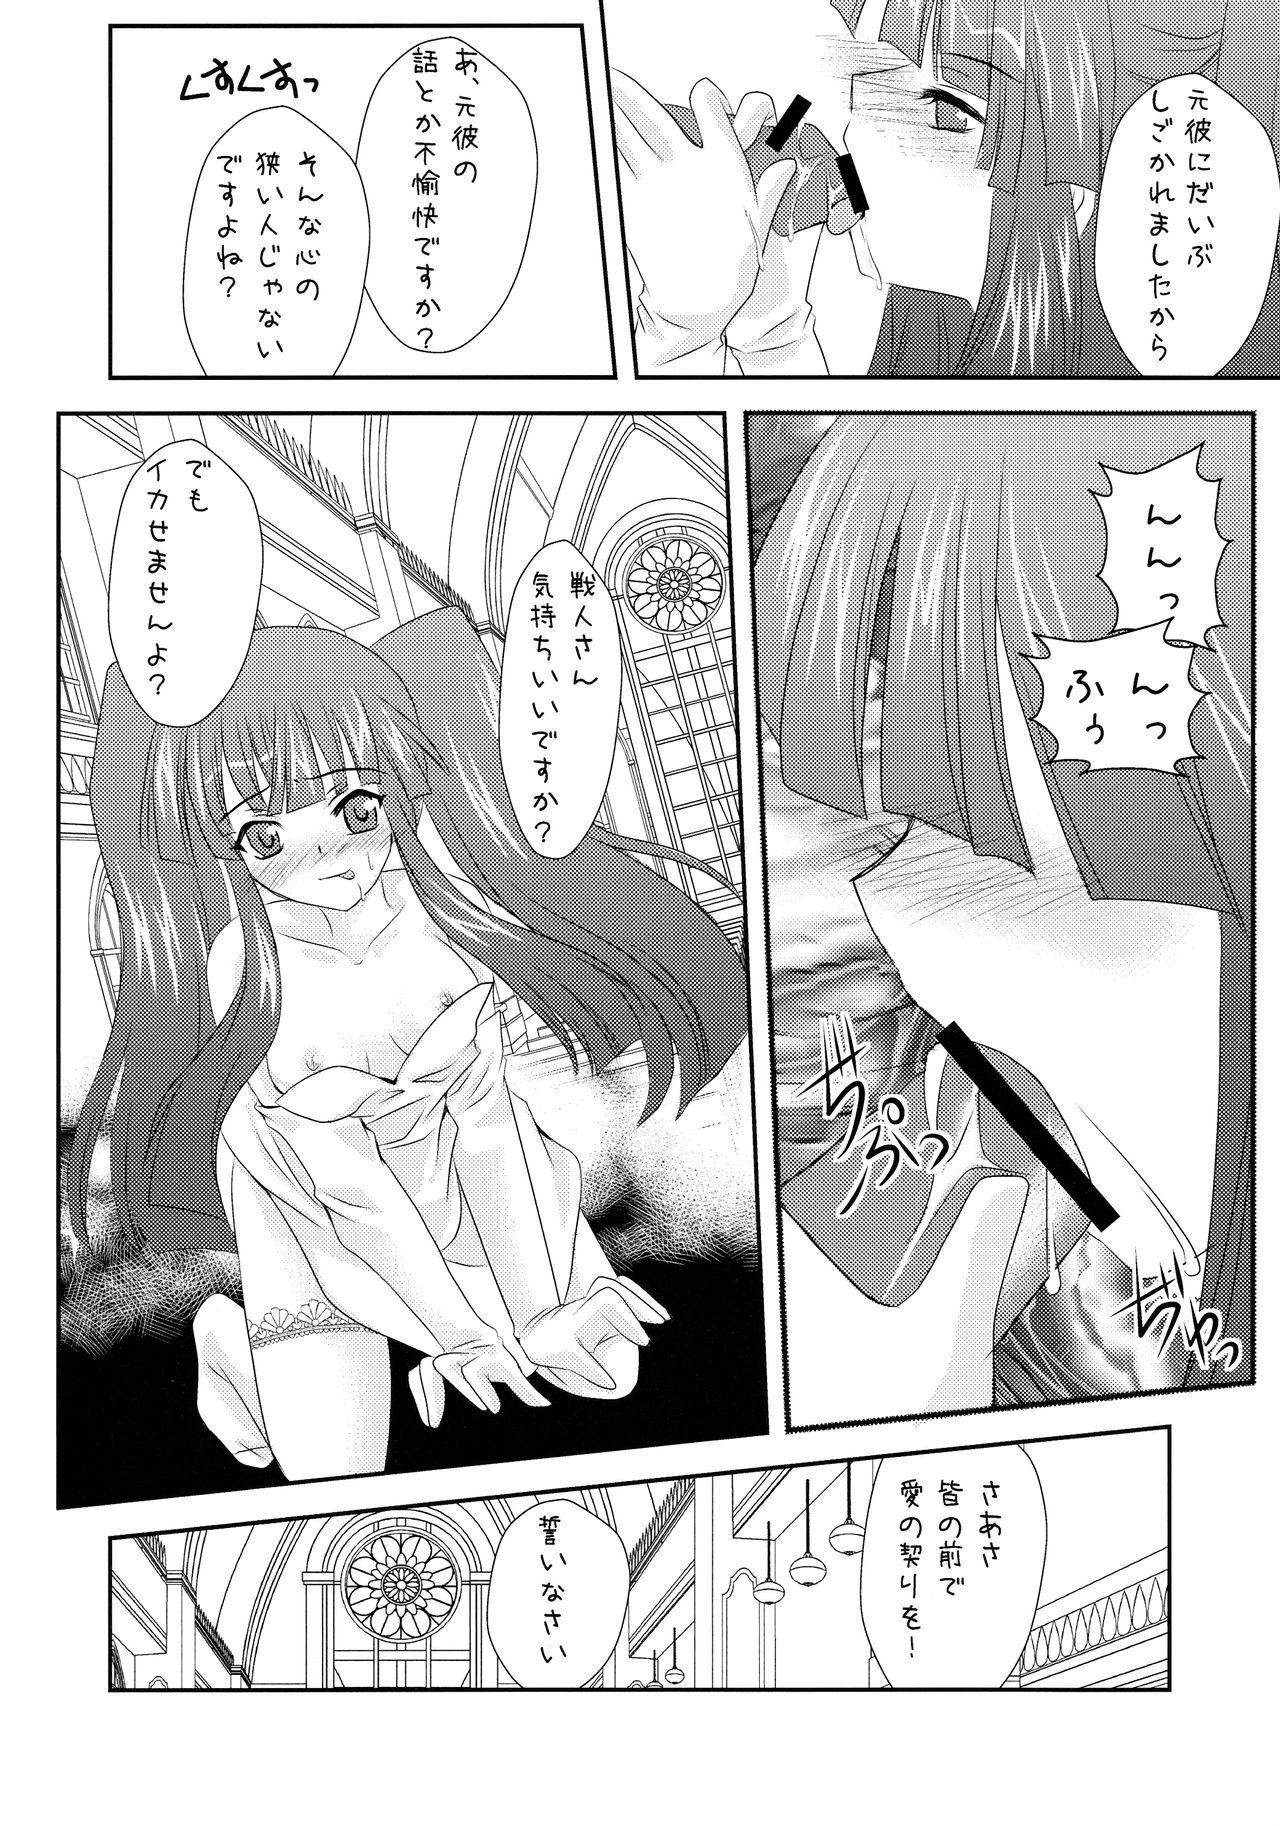 19yo Ushiromiya Bride - Umineko no naku koro ni Goth - Page 8